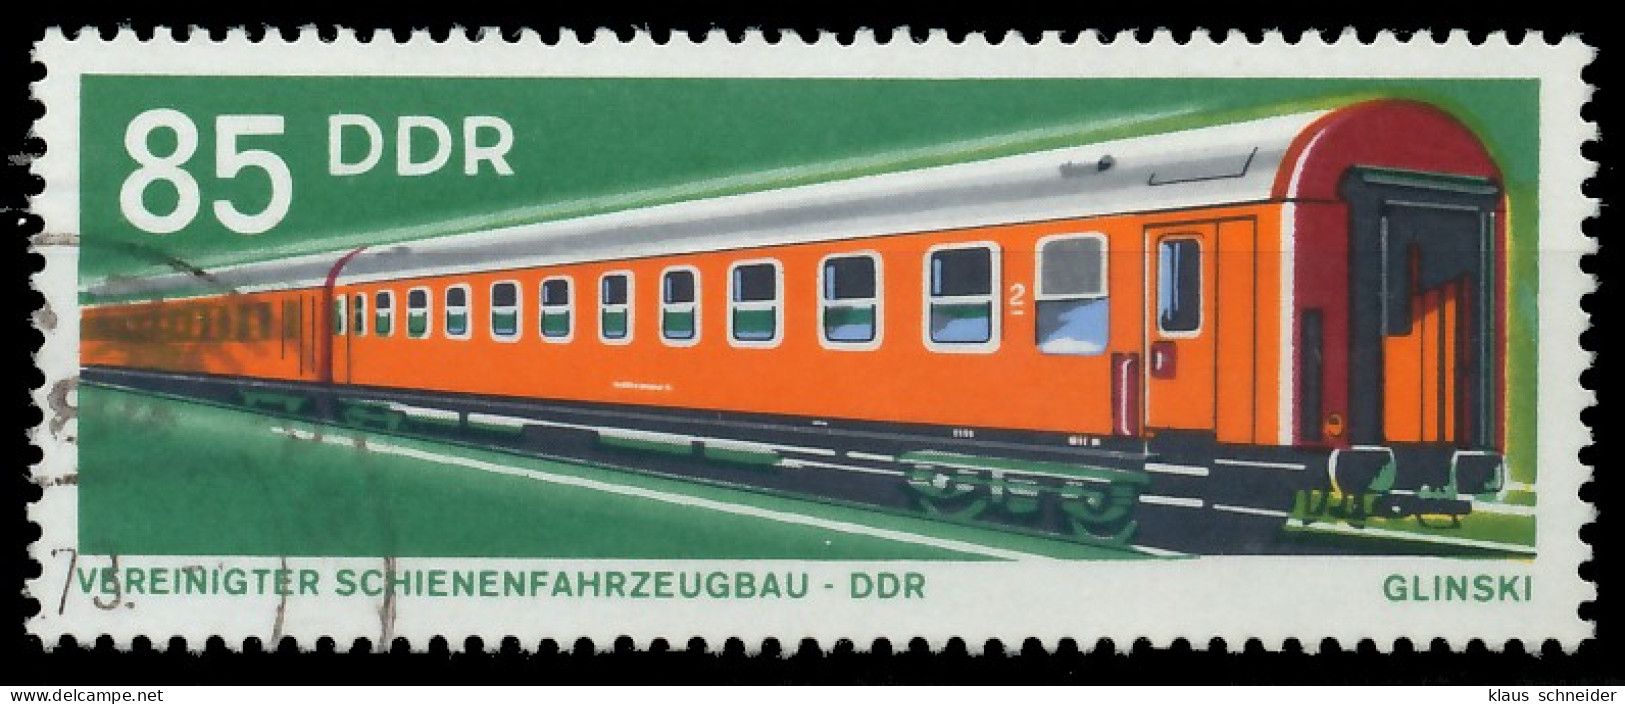 DDR 1973 Nr 1849 Gestempelt X40BBF2 - Gebruikt